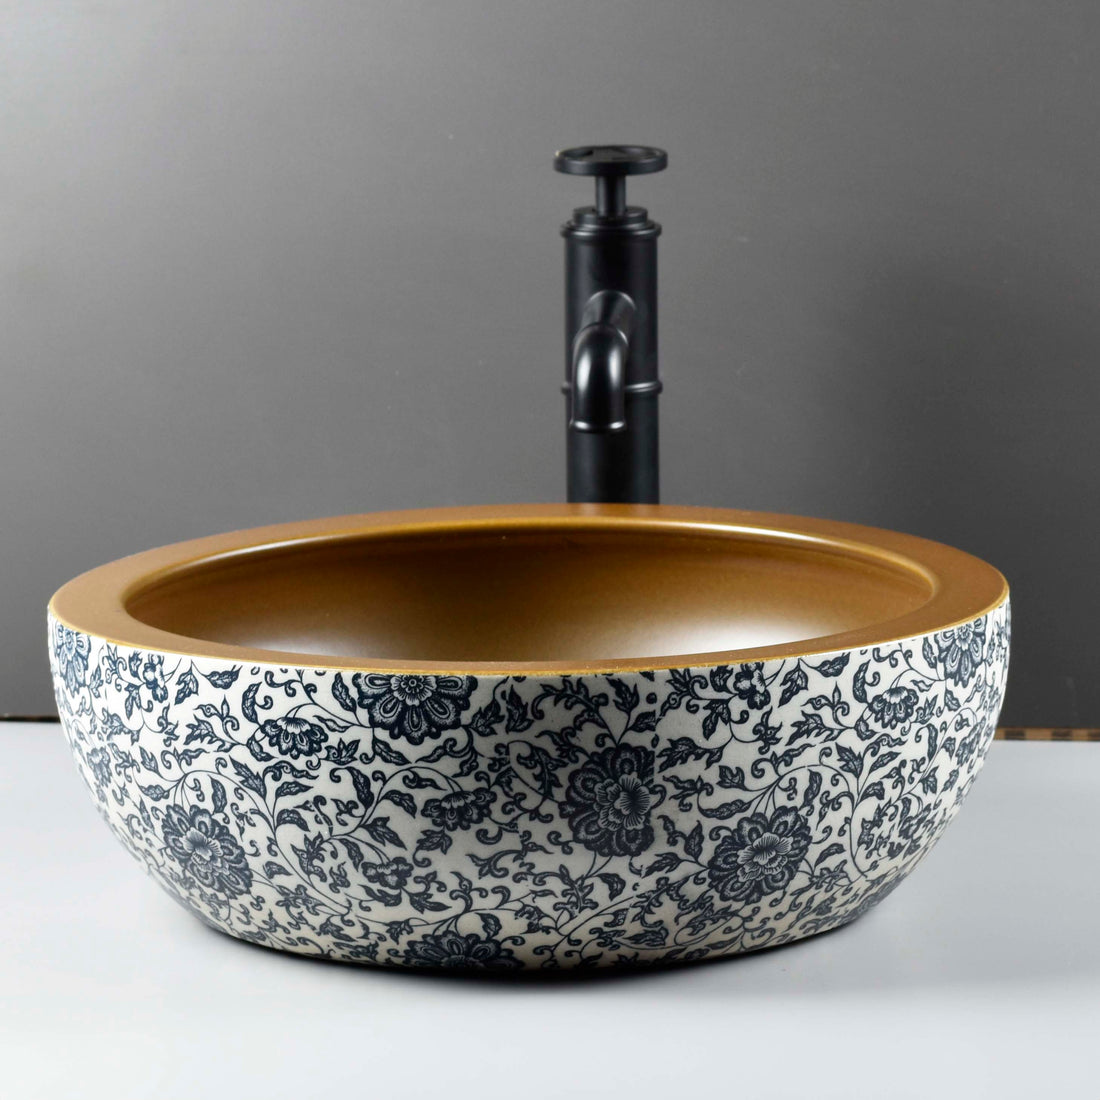 InArt Ceramic Wash Basin | Moroccan Design | Multicolor | 16x16x6 Inches | Tabletop Model - InArt-Studio